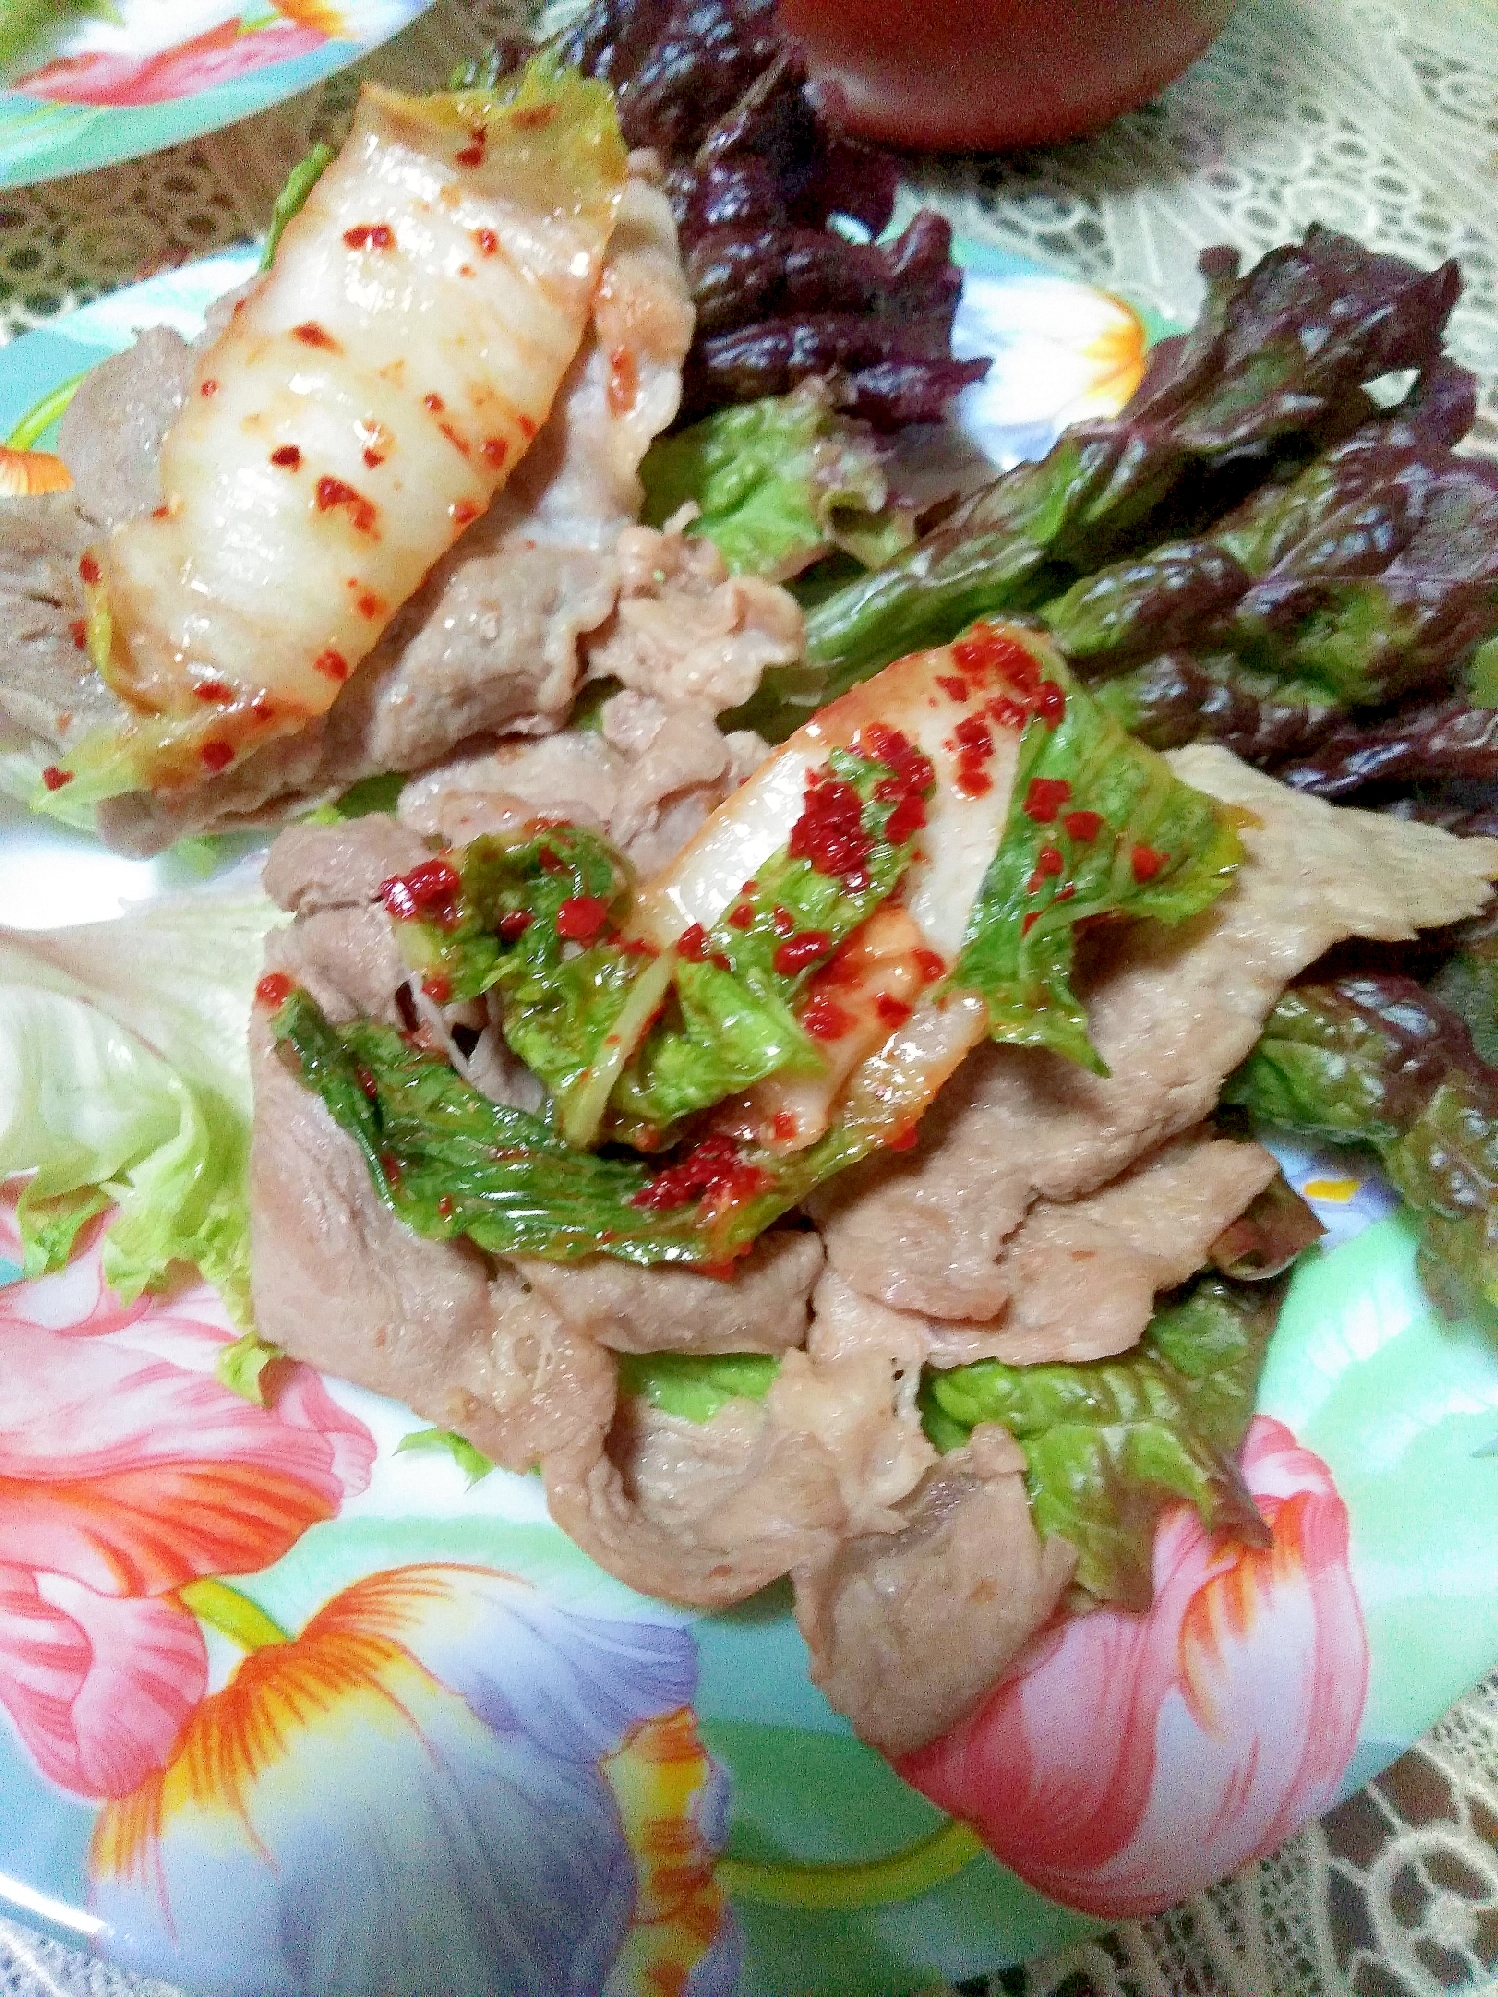 豚ロース肉とキムチのサニーレタス巻